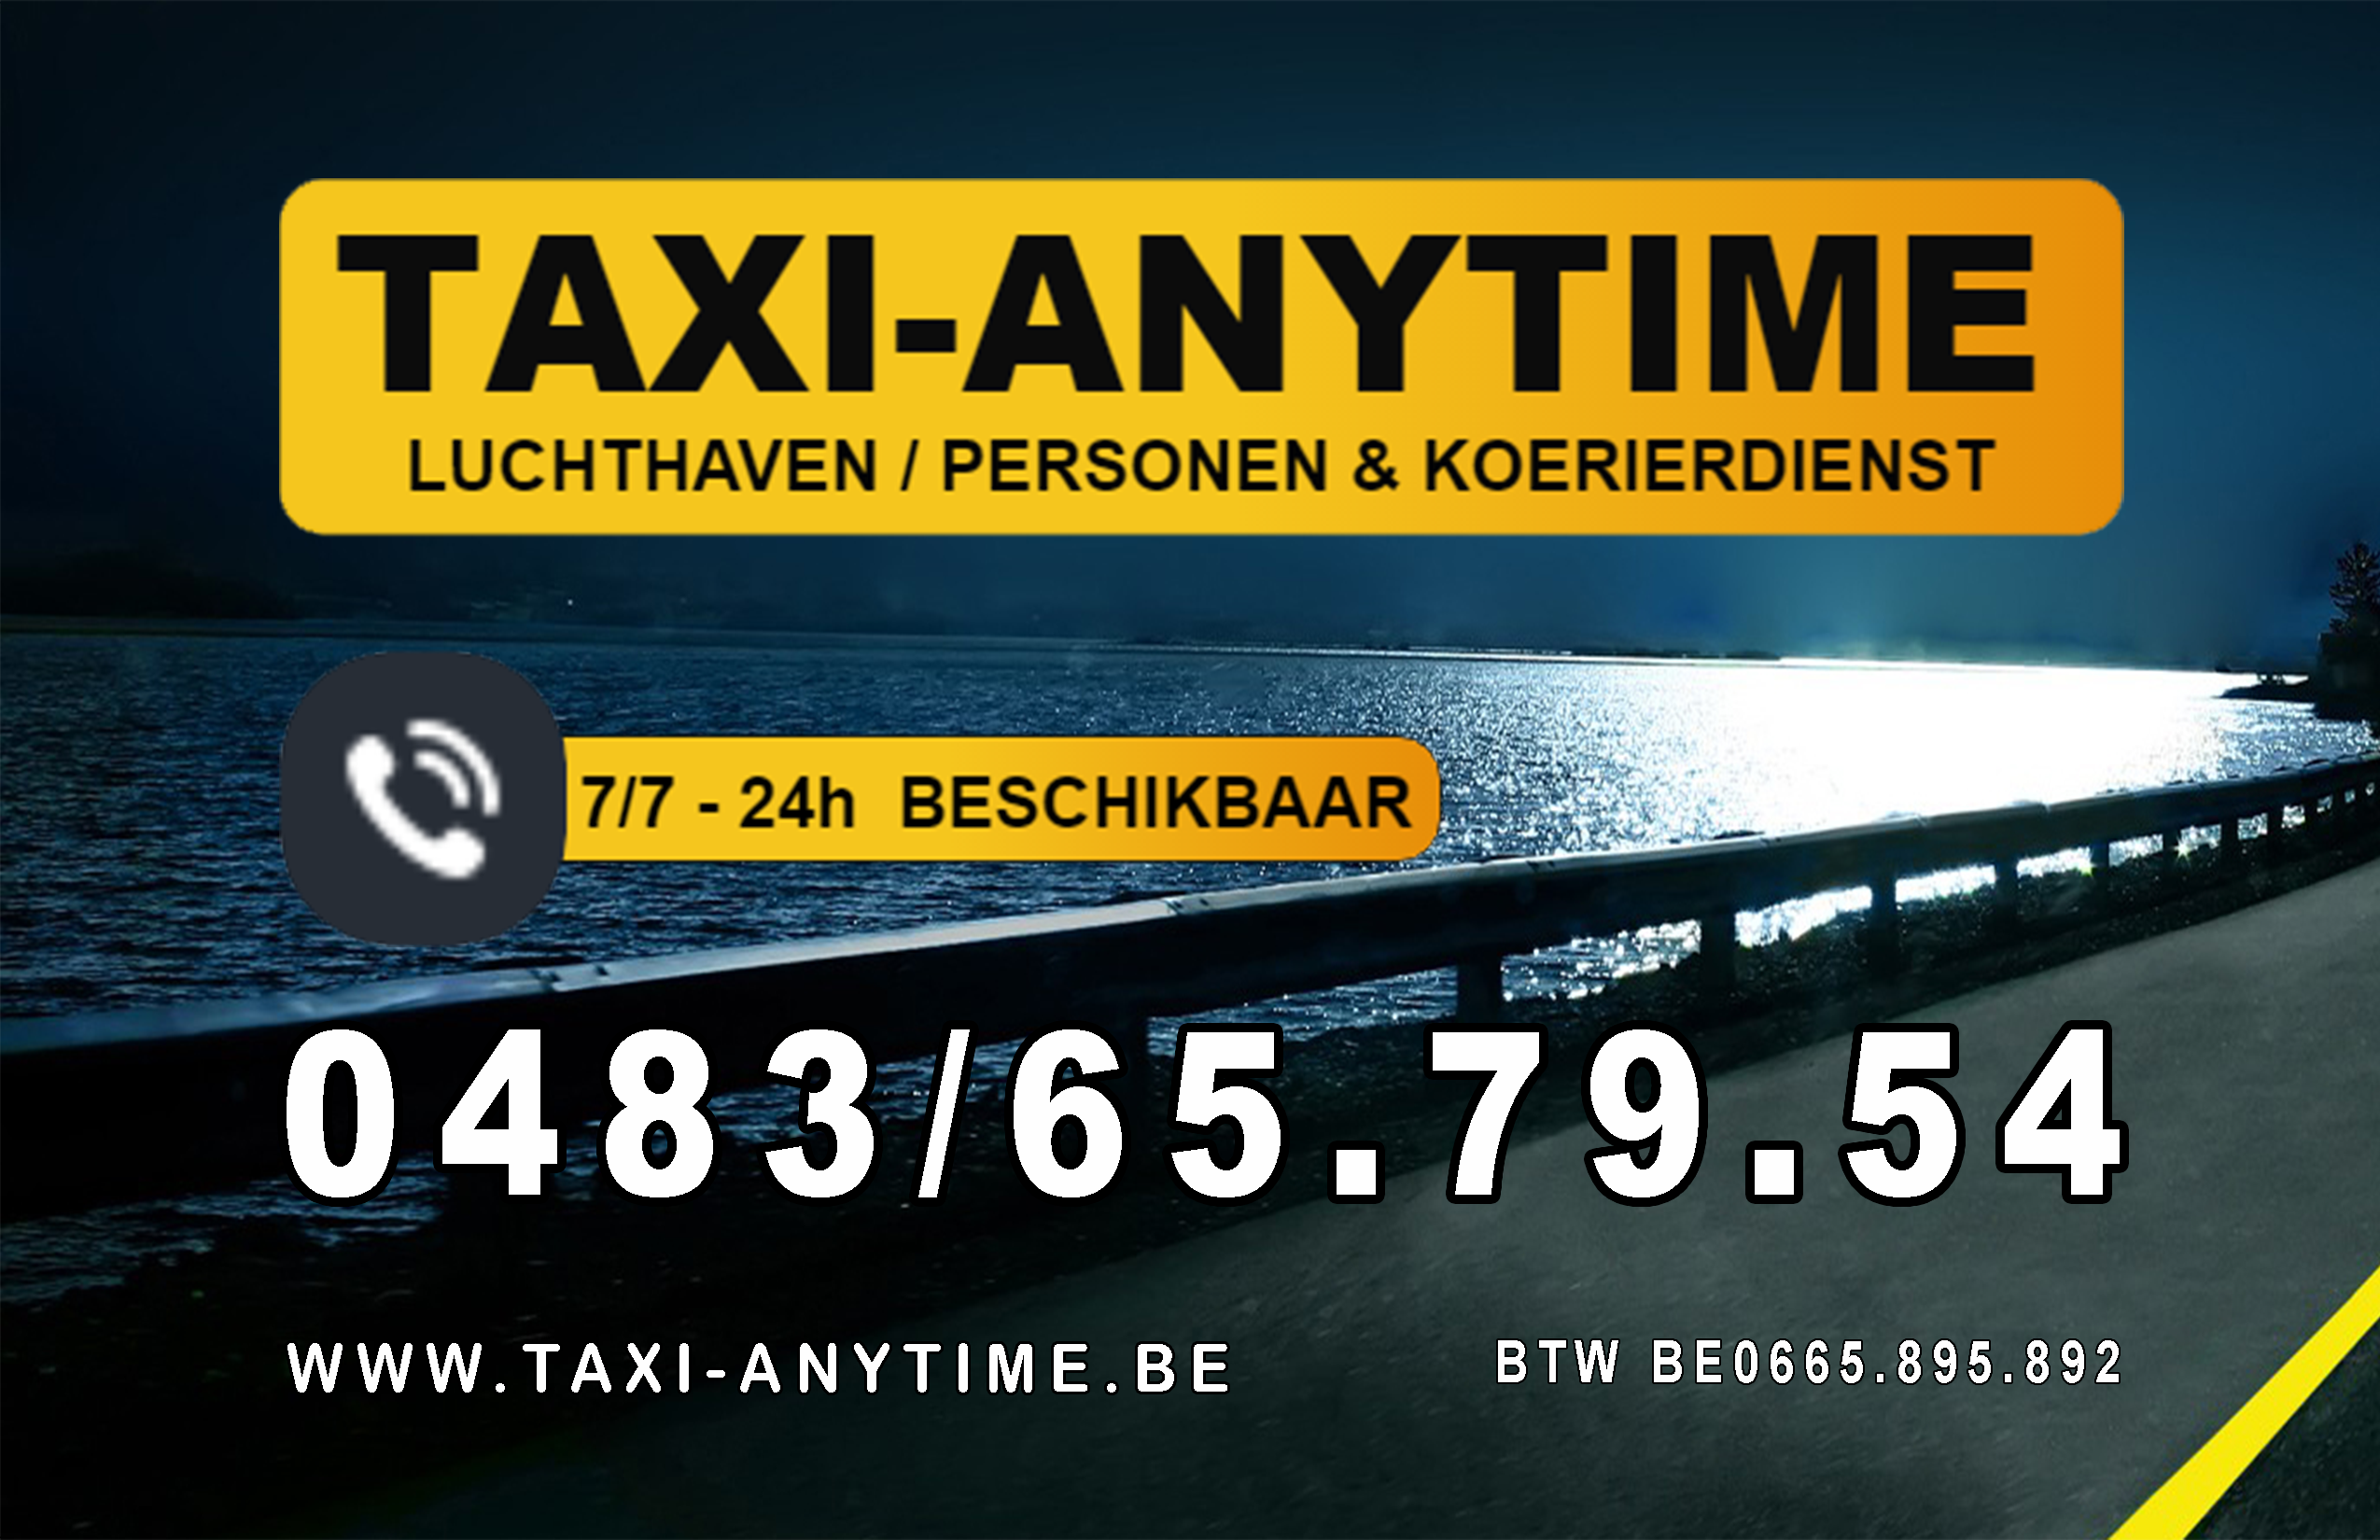 taxibedrijven met luchthavenvervoer Brugge Taxi-anytime